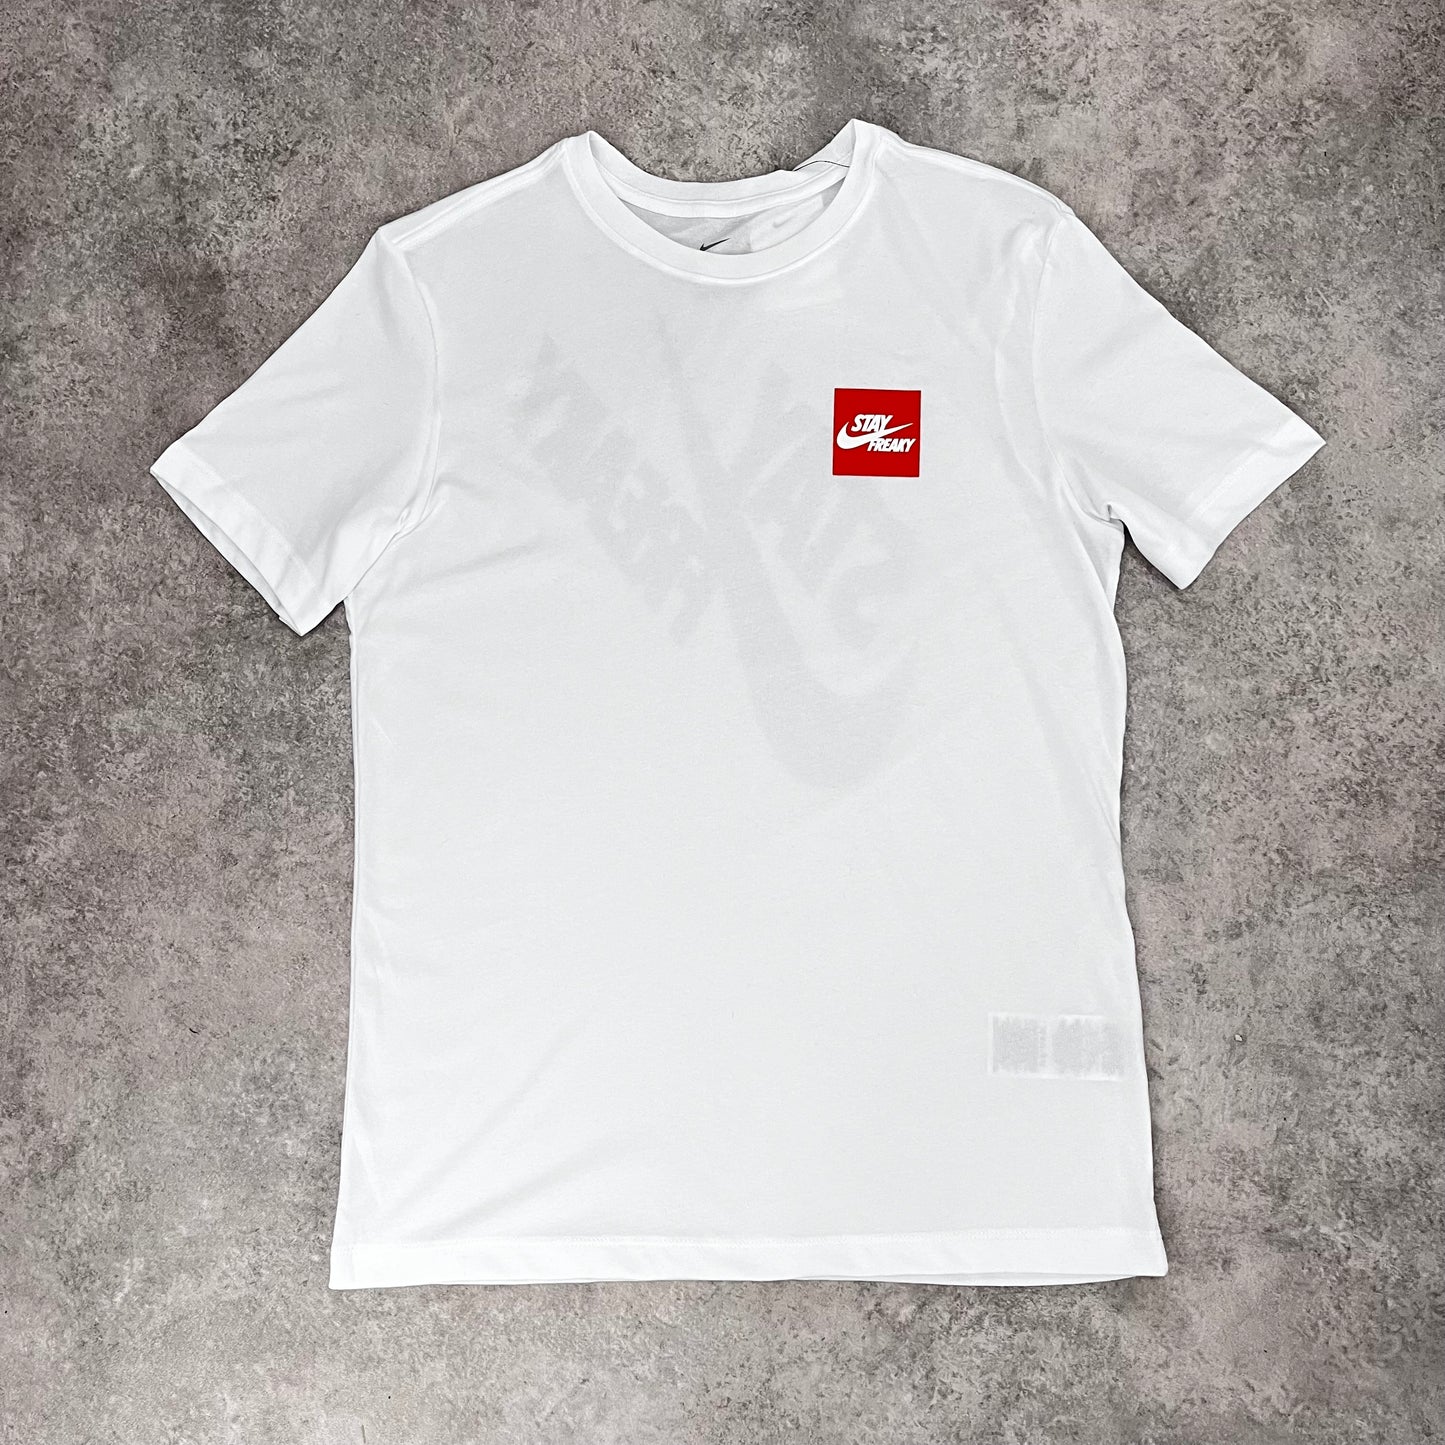 Nike ‘Giannis’ T-shirt